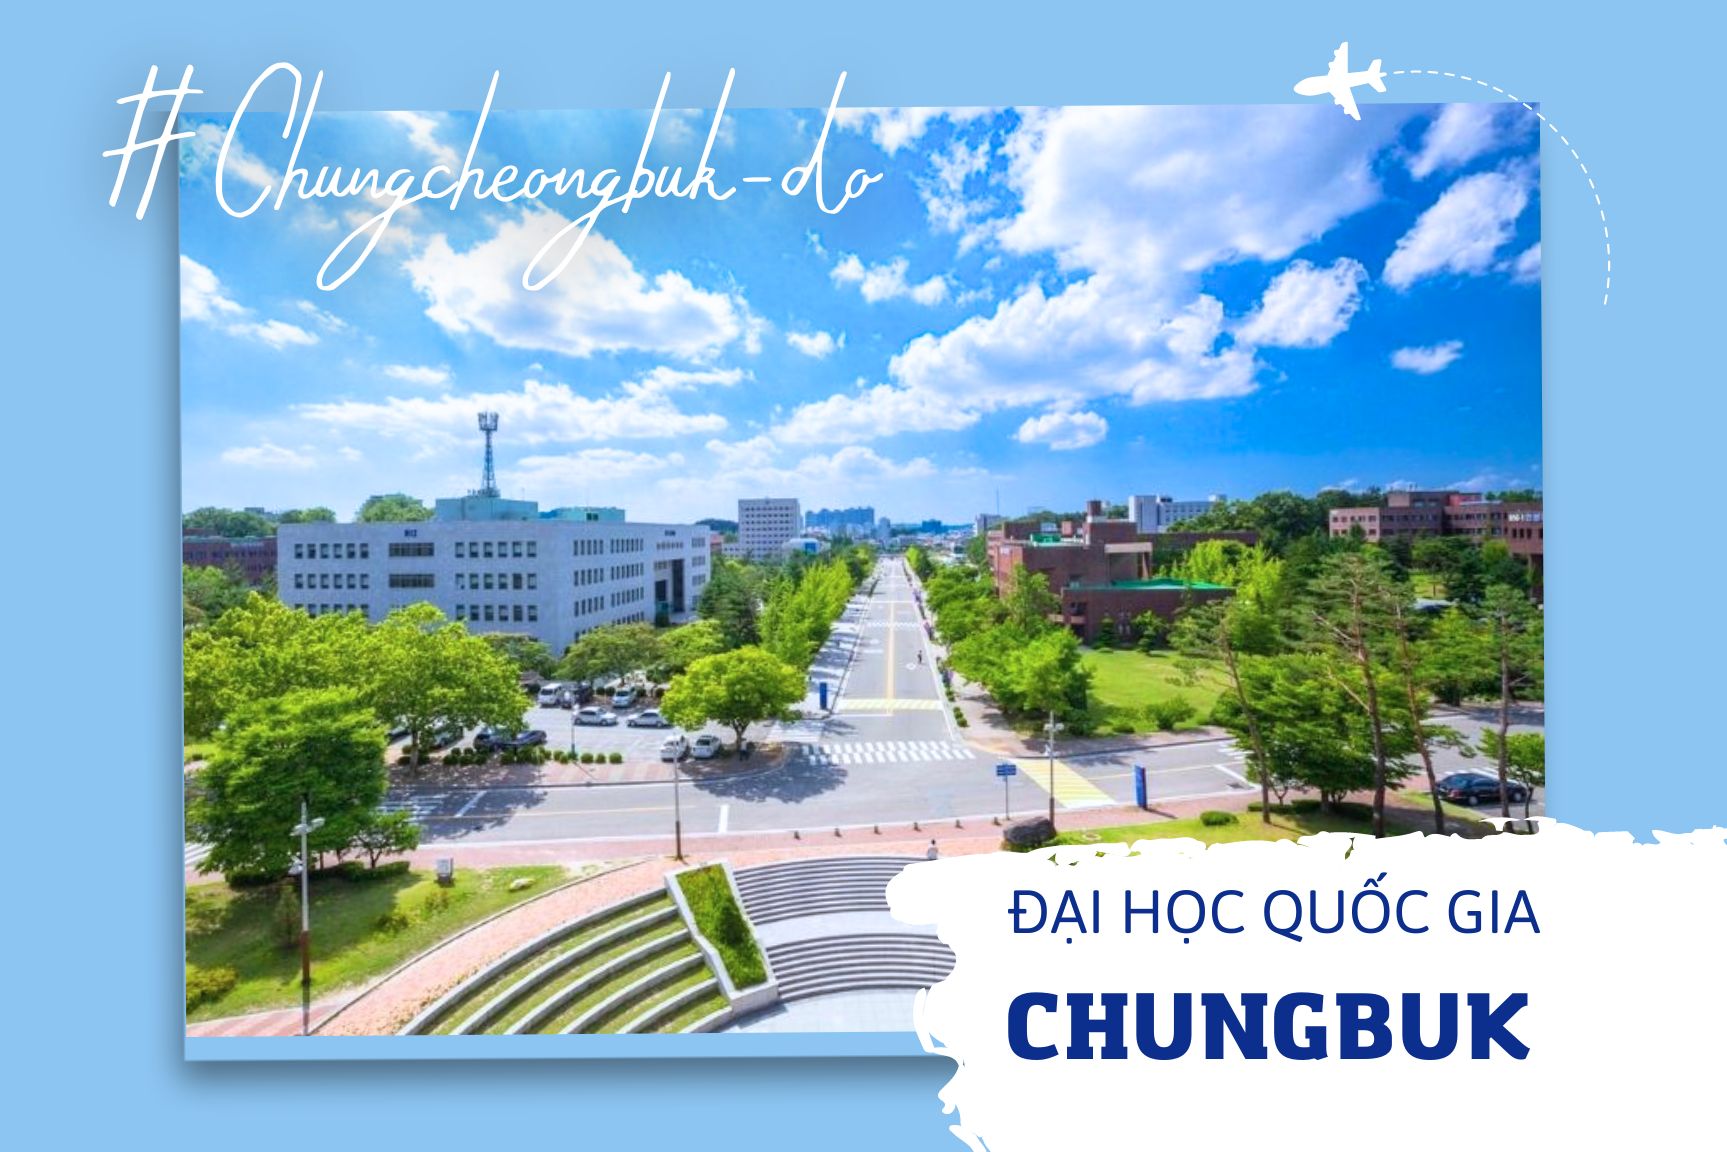 Trường Đại học Quốc gia Chungbuk Hàn Quốc - 충북대학교